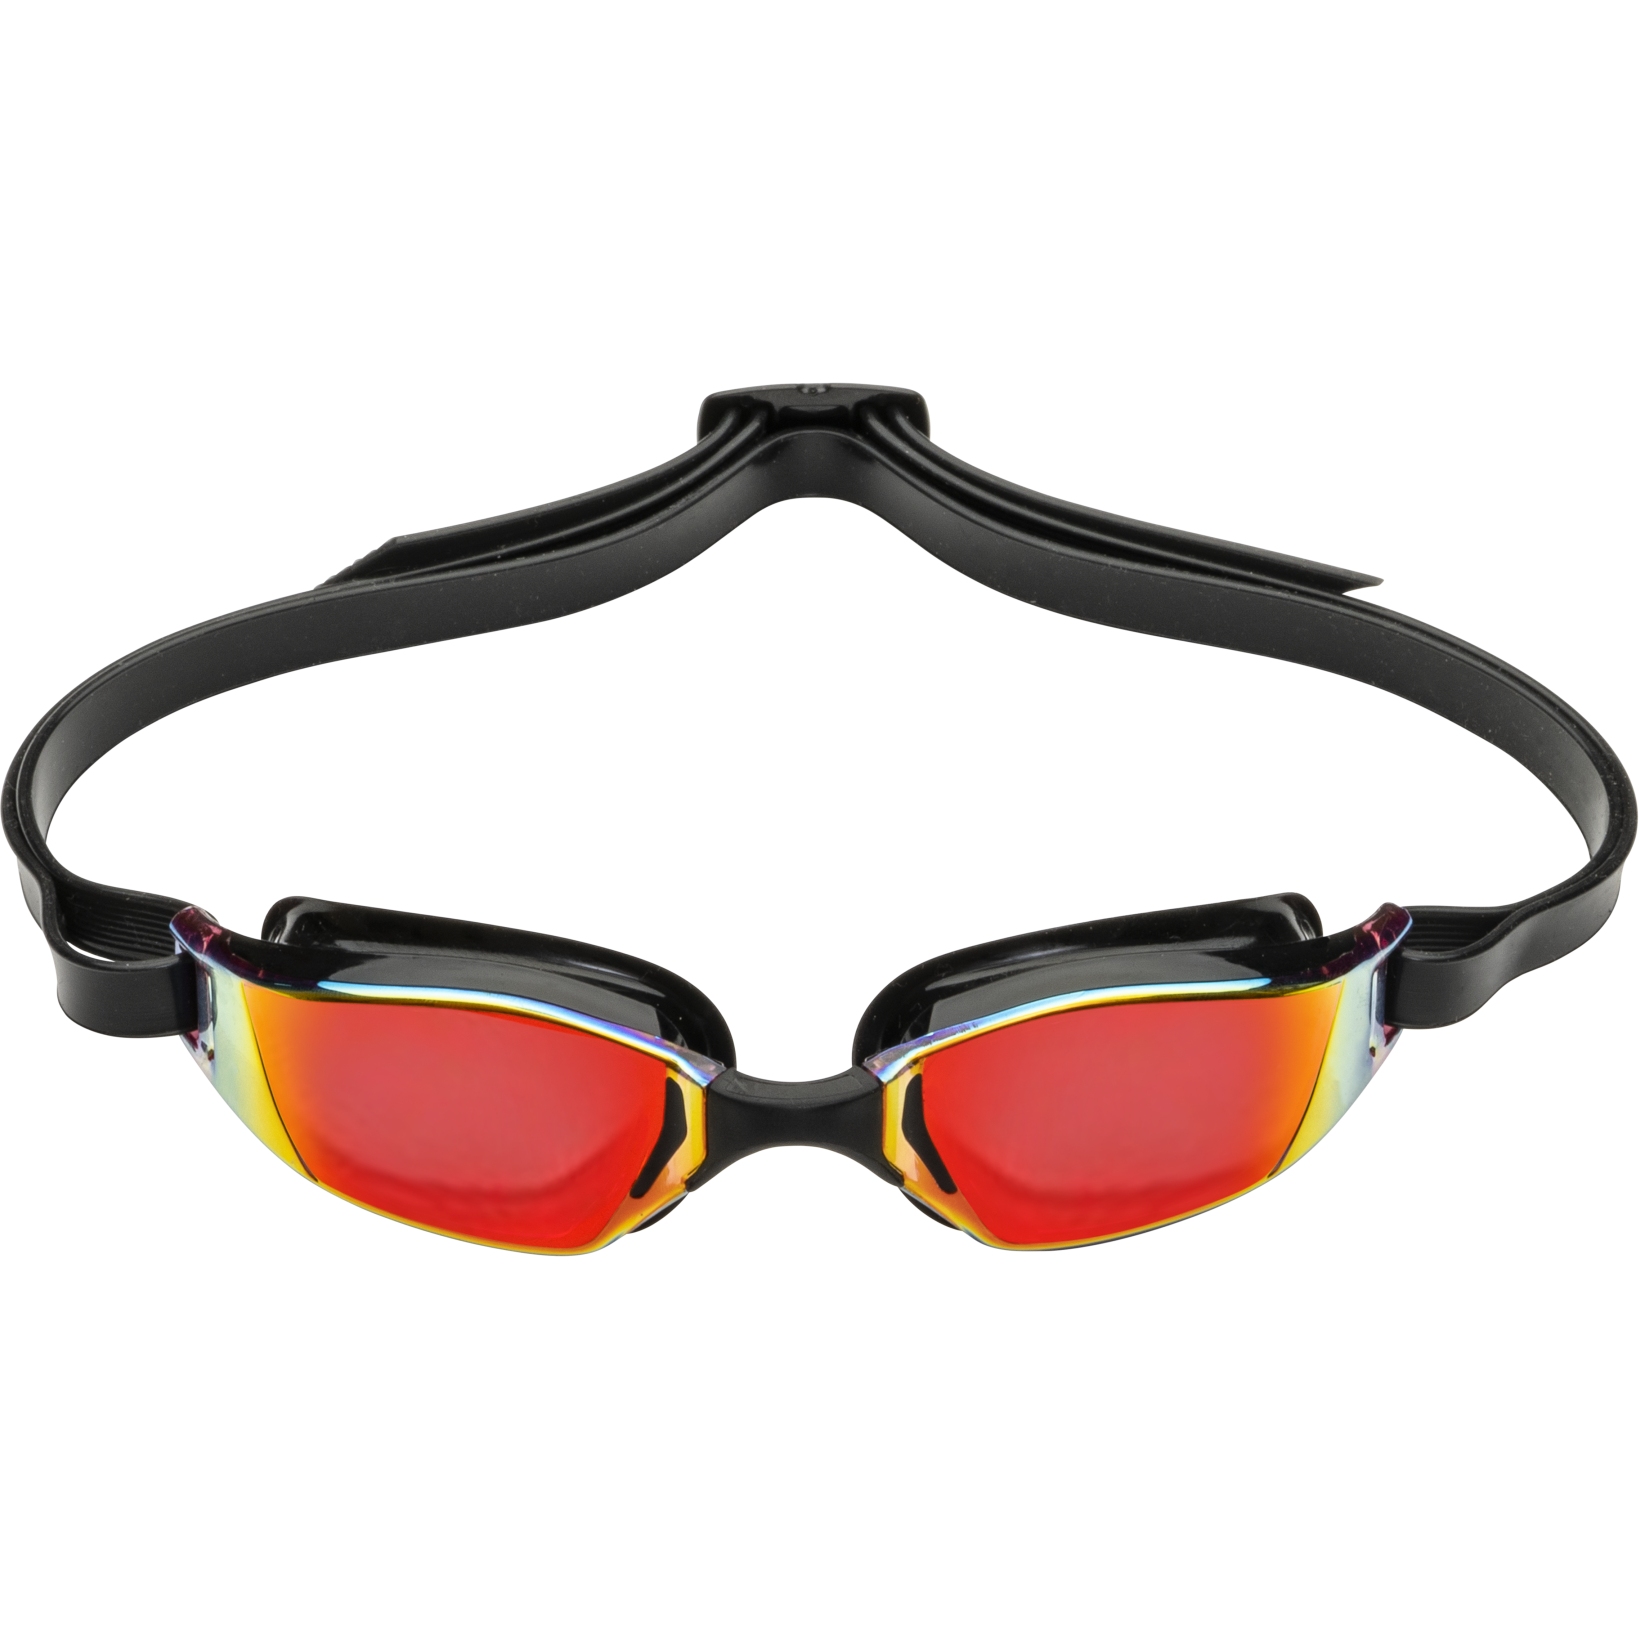 Productfoto van AQUASPHERE Xceed Zwembril - Rood Titaan gespiegeld - Zwart/Zwart